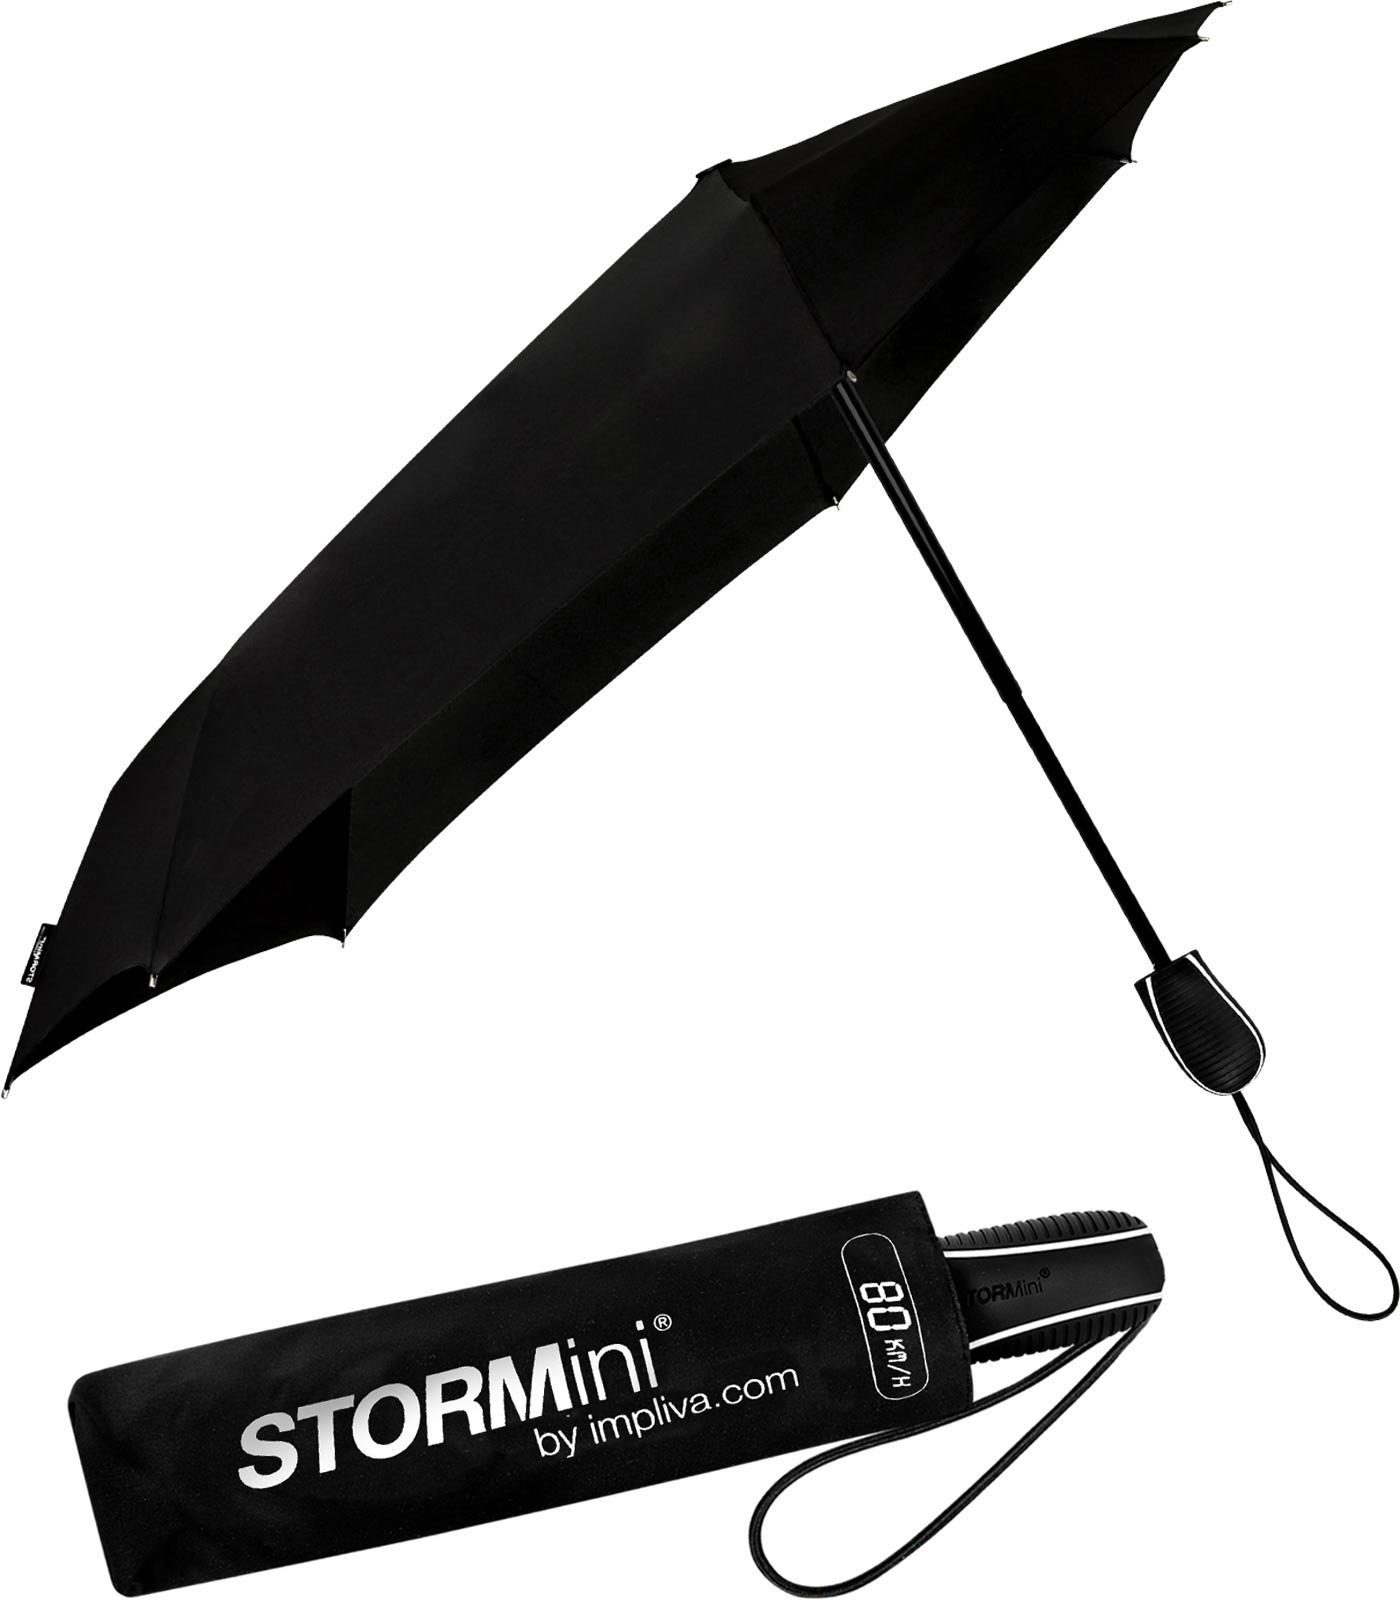 Impliva Taschenregenschirm STORMini aerodynamischer Sturmschirm, durch seine besondere Form dreht sich der Schirm in den Wind, hält bis zu 80 km/h aus schwarz